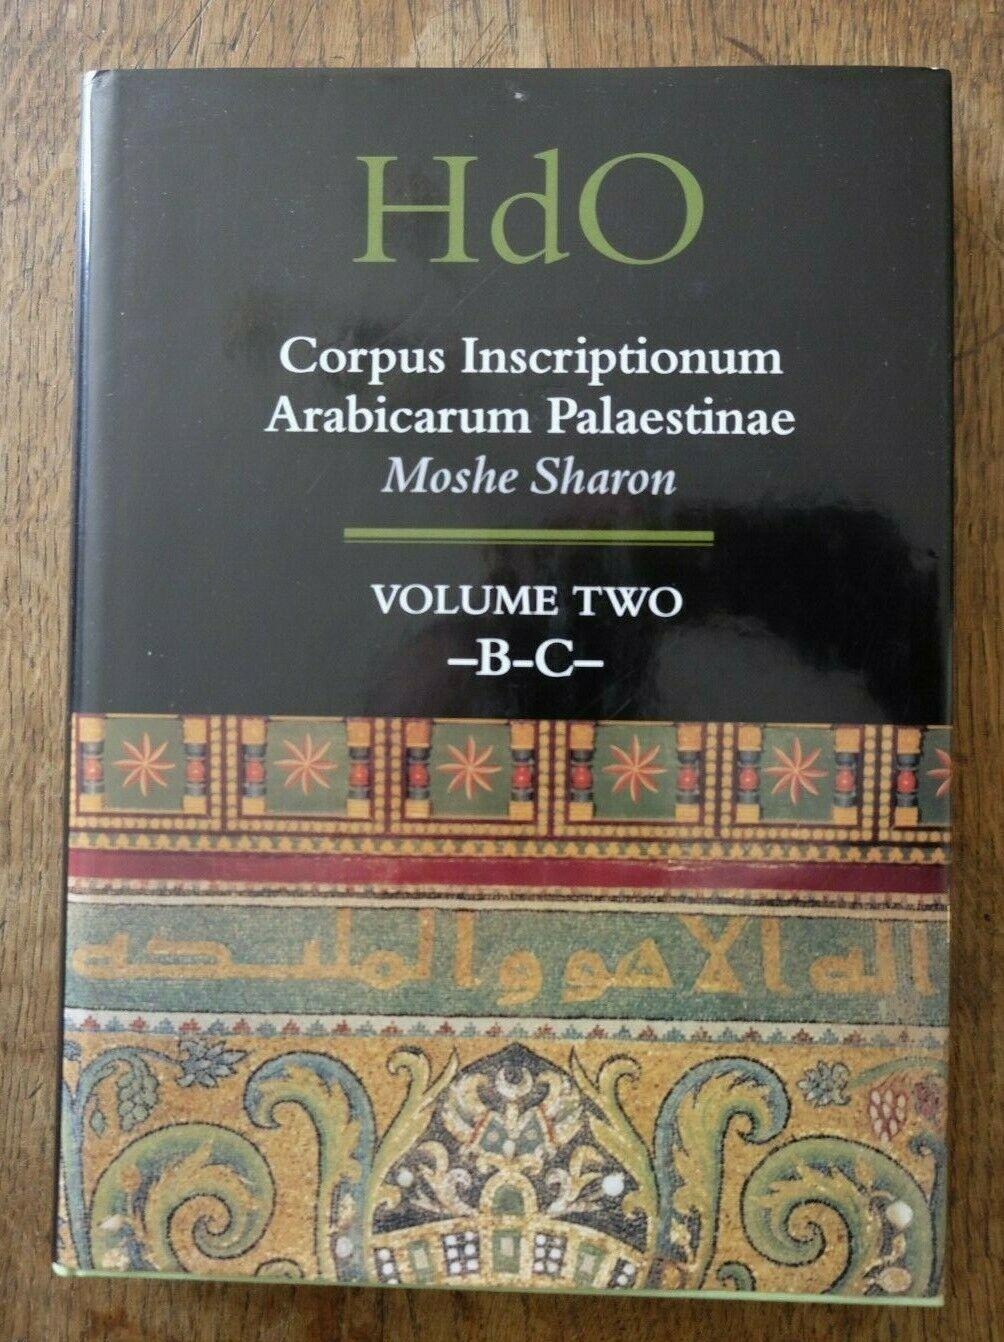 Corpus Inscriptionum Arabicarum Palaestinae, volume 2, -B-C.